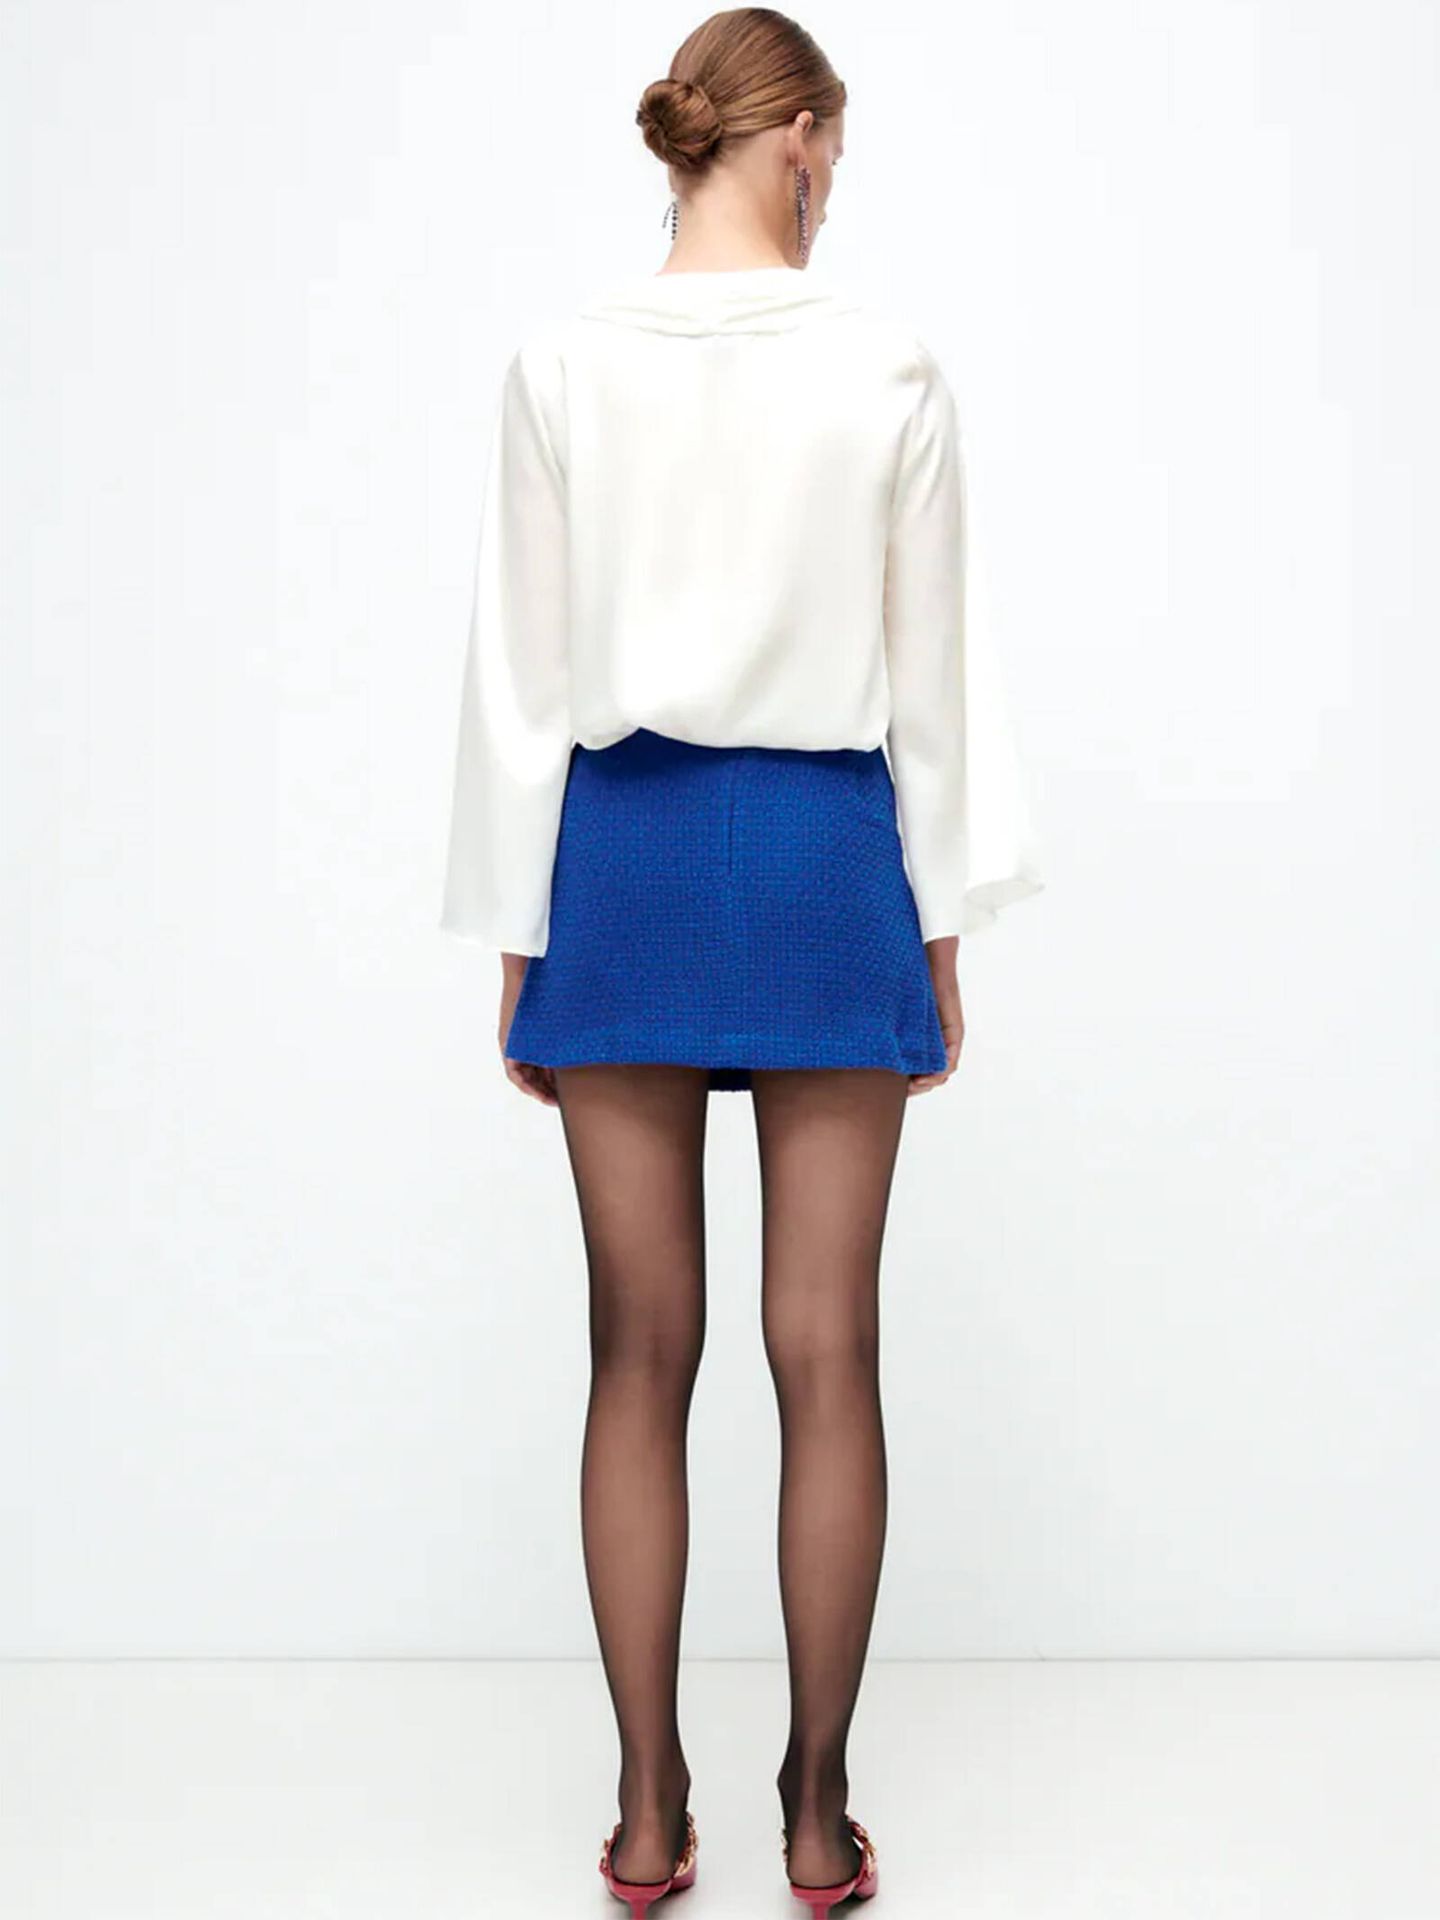 La nueva minifalda de Zara que es un diez de estilo. (Cortesía)